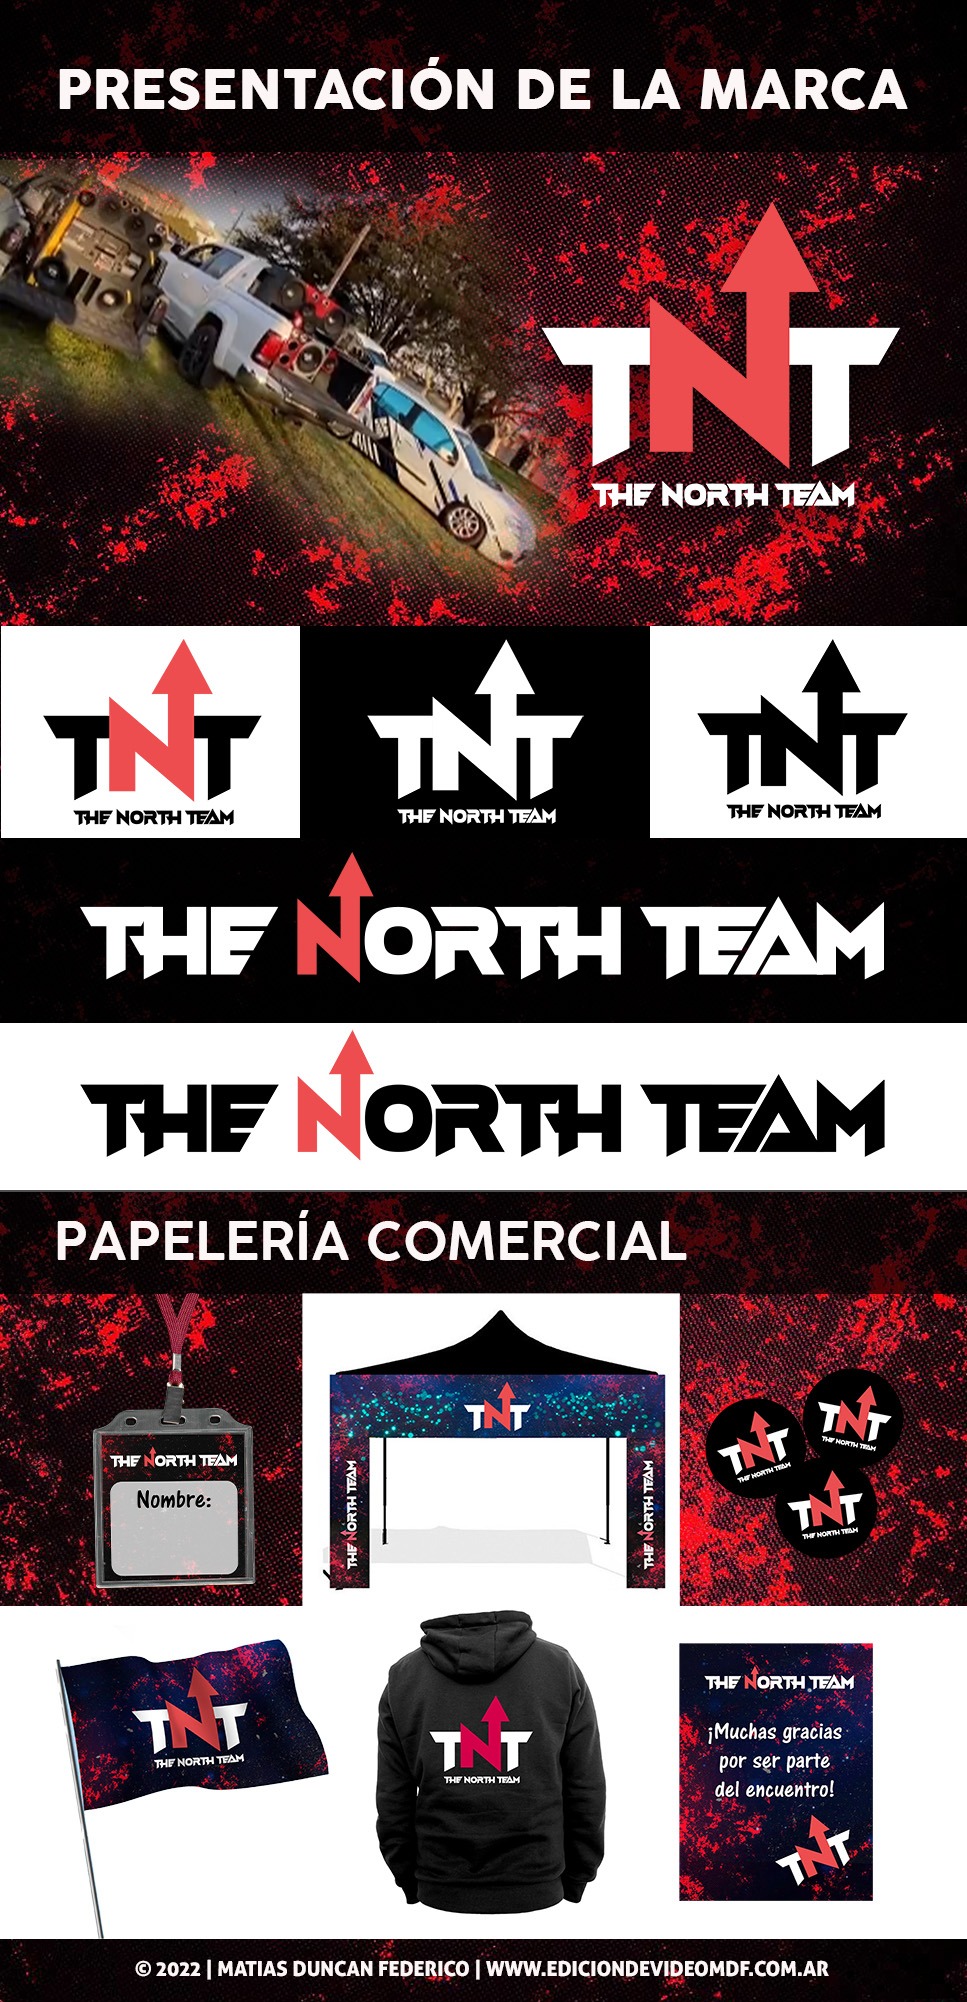 Presentacion de la marca de the north team